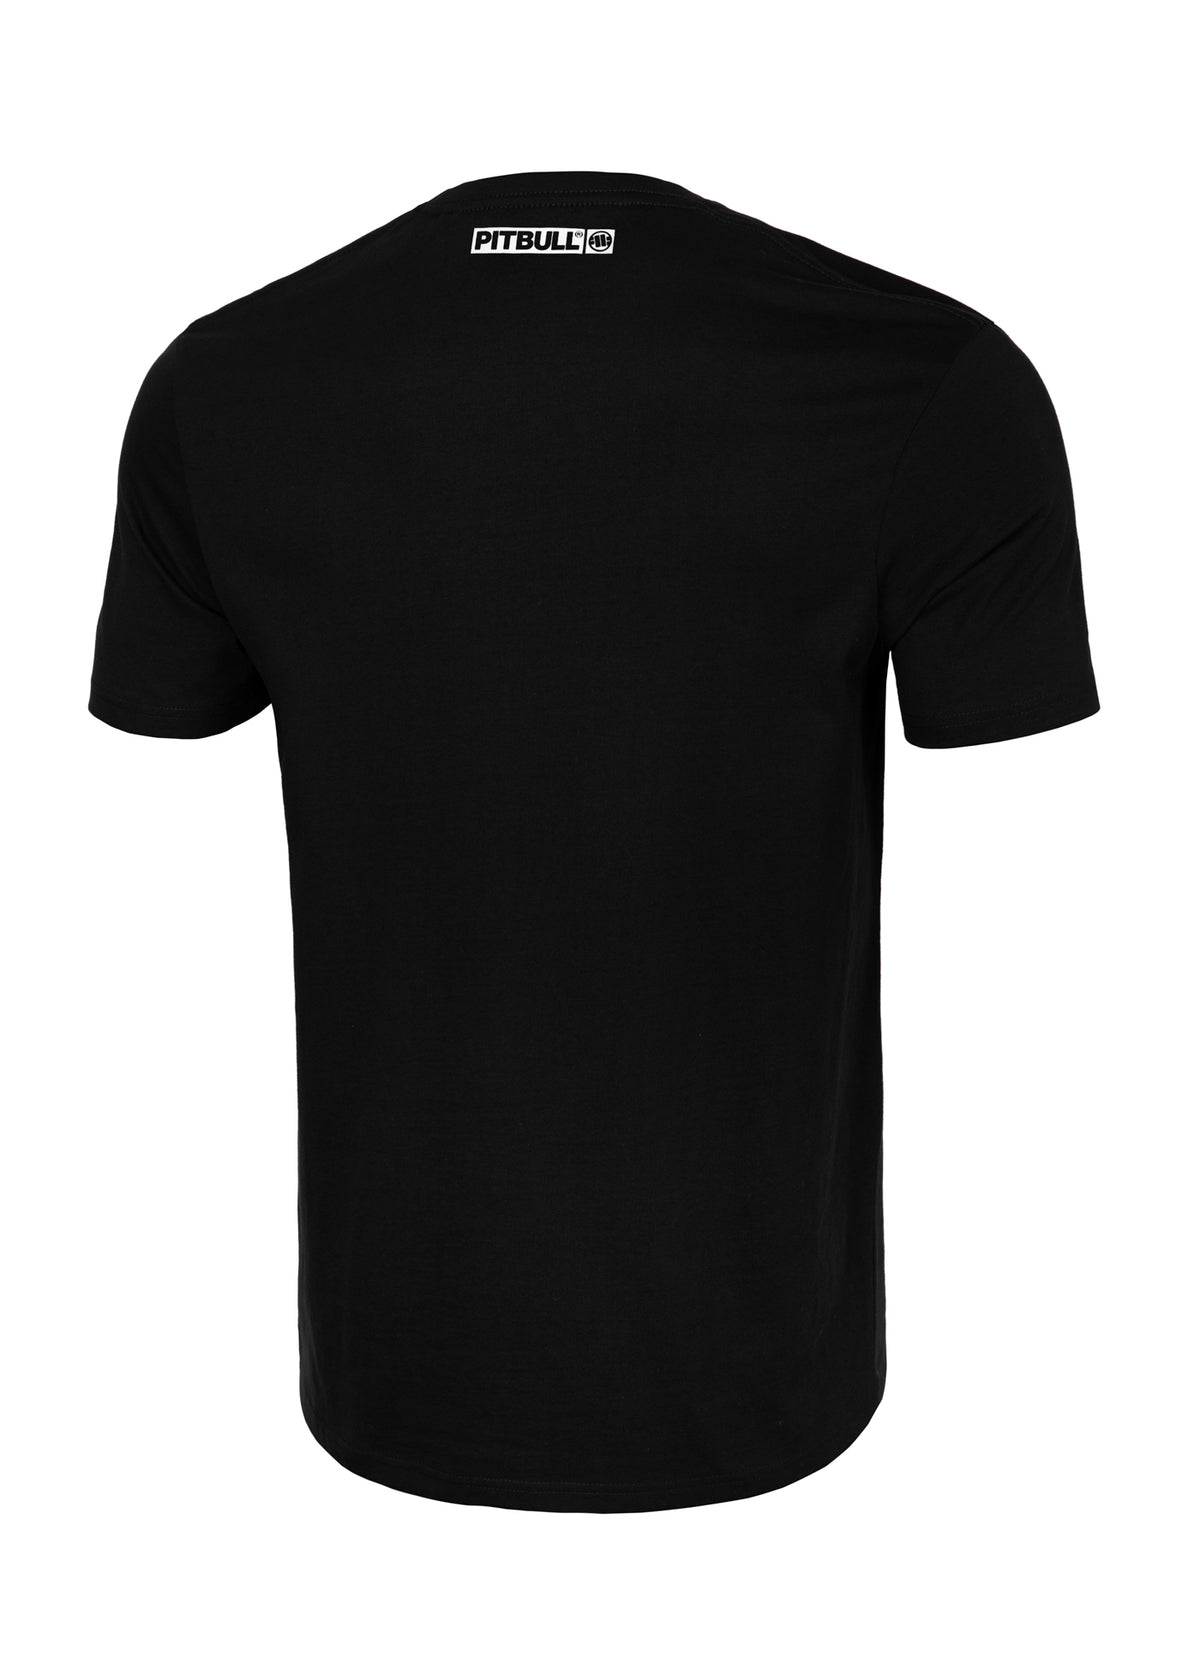 HILLTOP Lightweight Black T-shirt